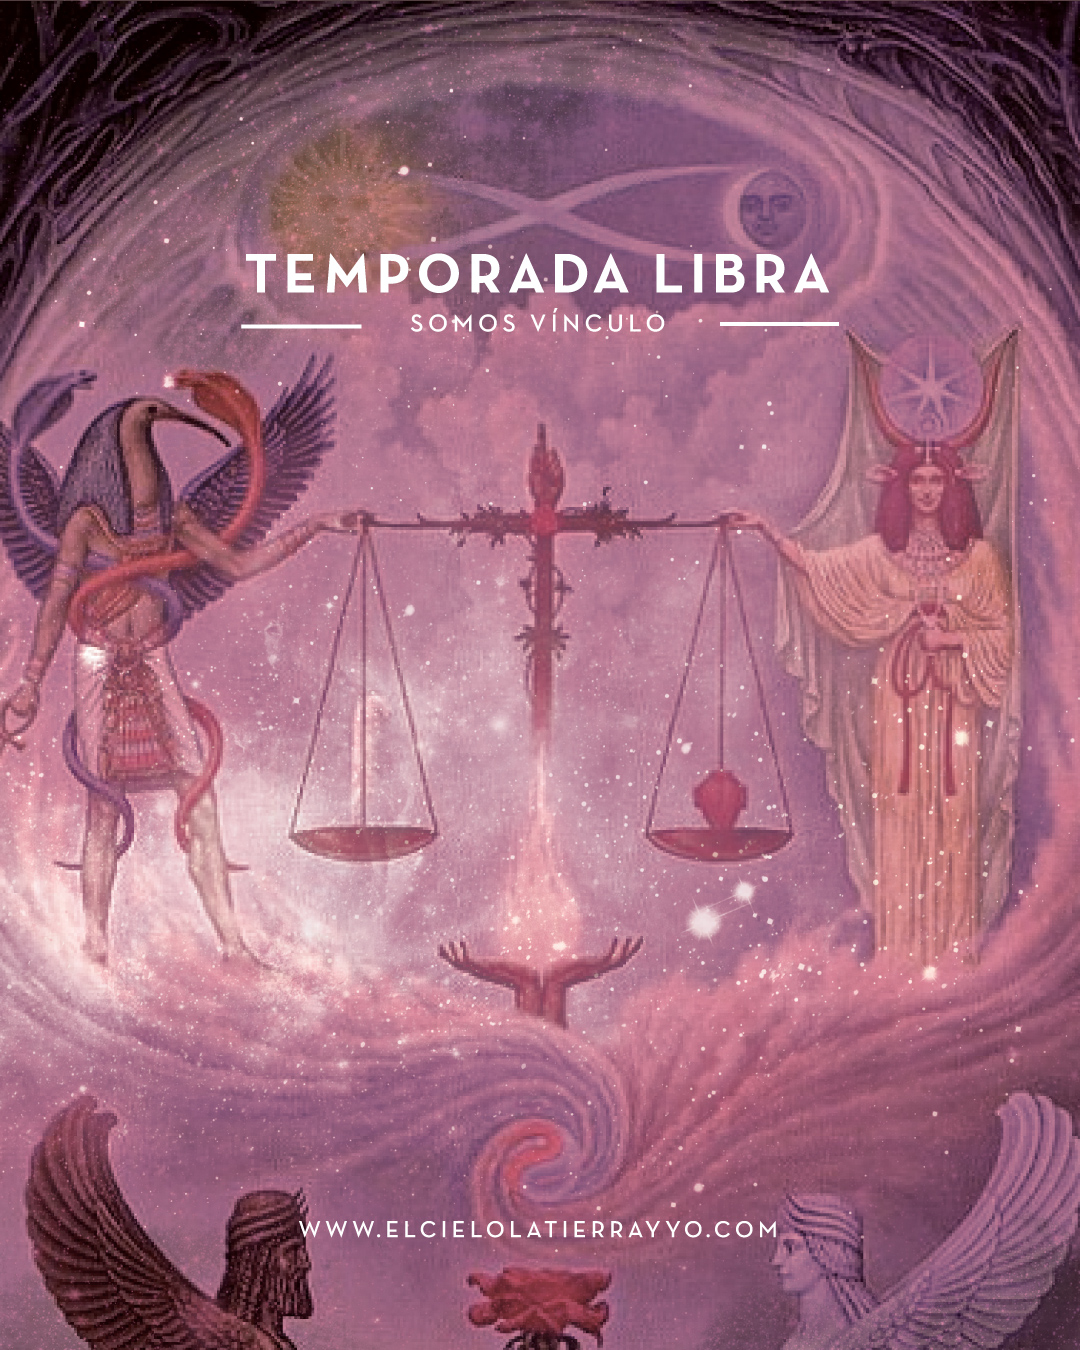 Temporada Libra 2019 , Astrología Psicológica para el Desarrollo del Ser, elcielolatierrayyo.com Escuela Online